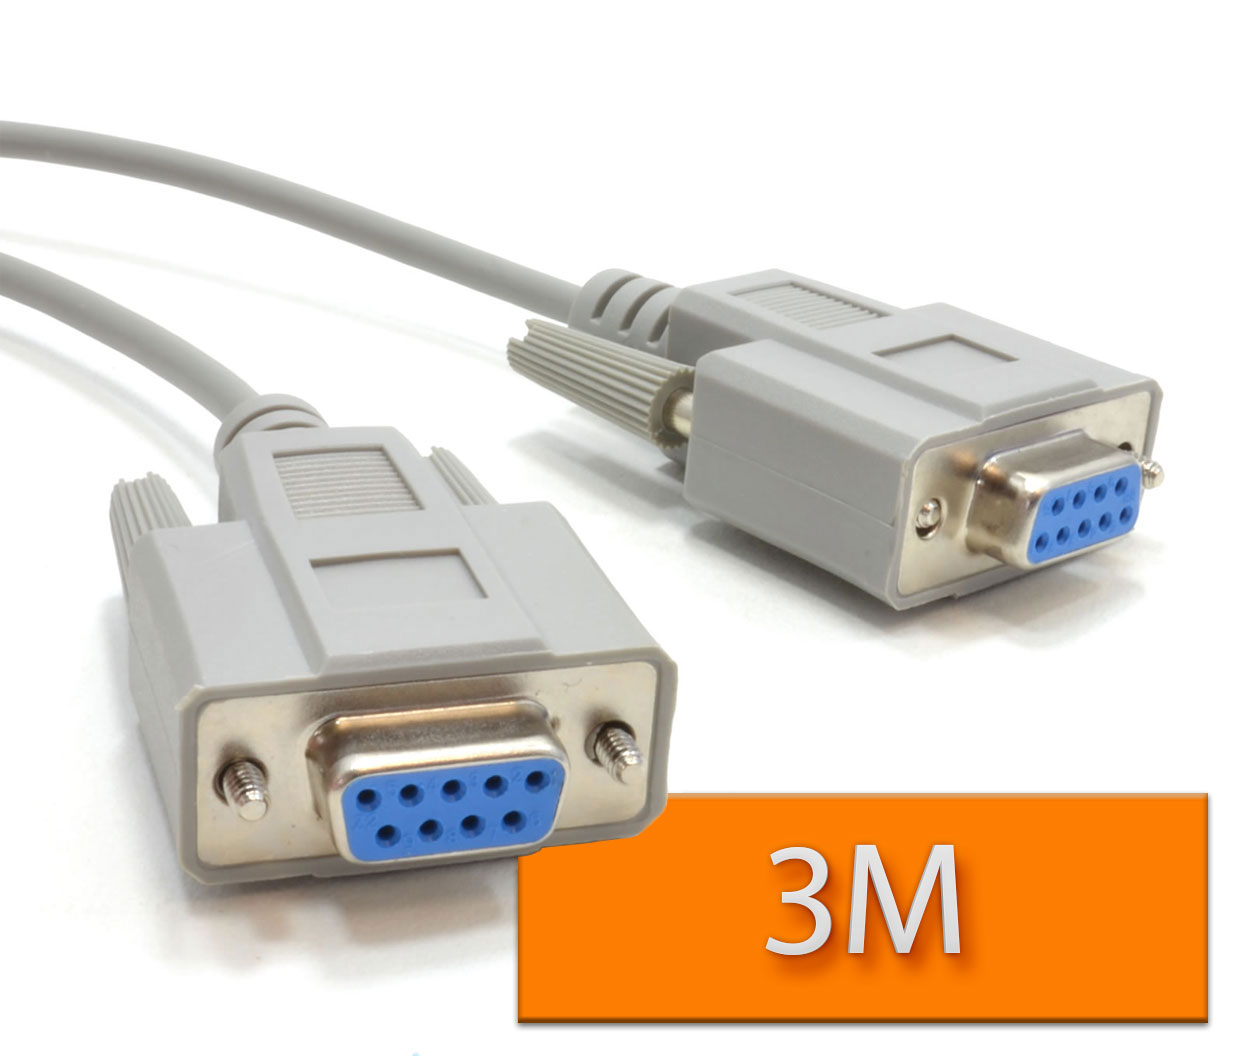 Kabel DB9 Null Modem (RS232) 3m ž-ž